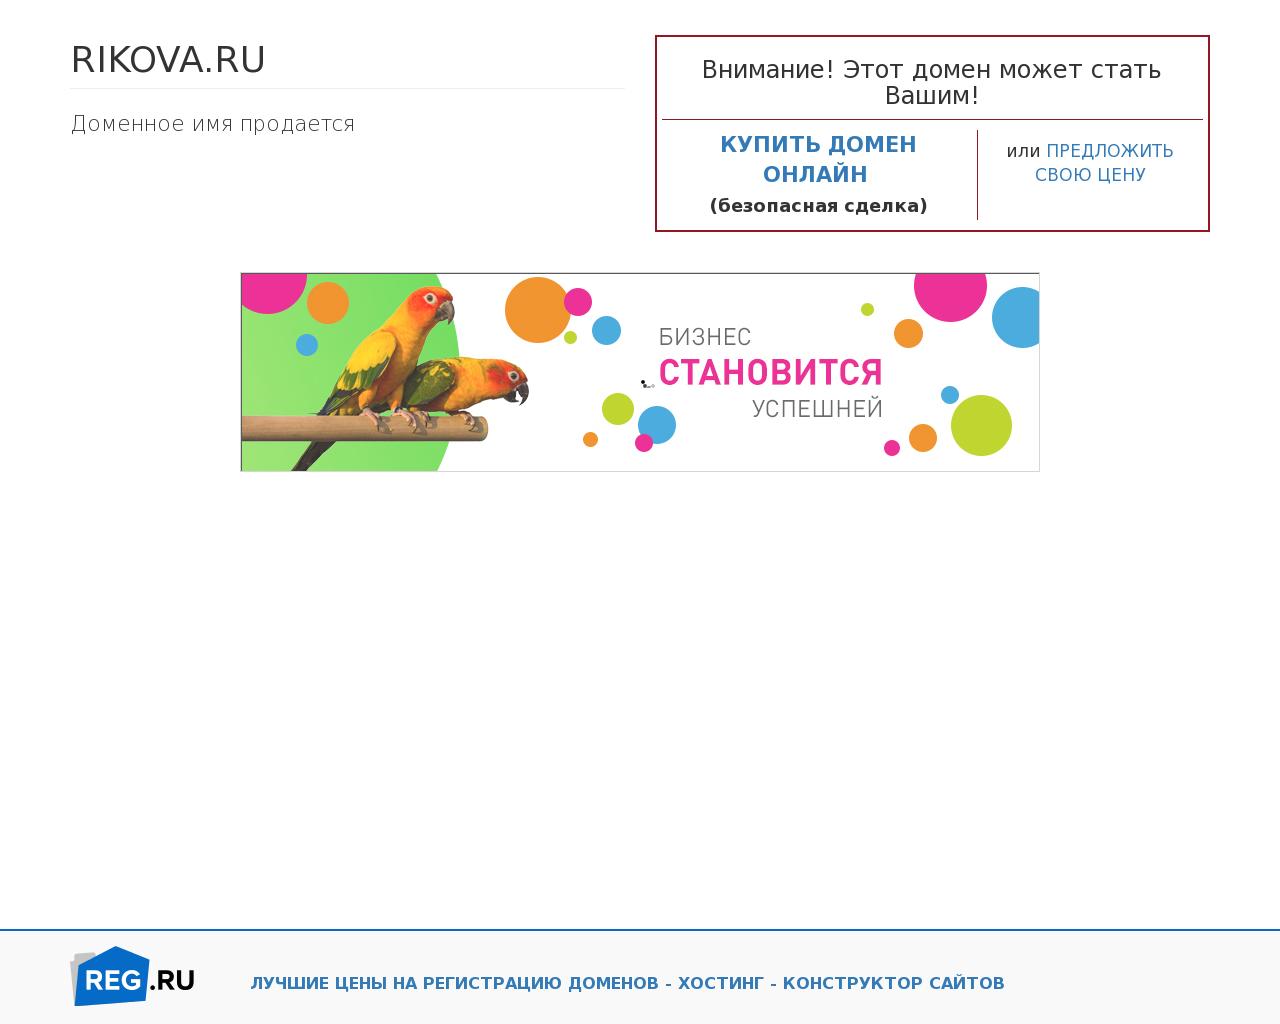 Изображение сайта rikova.ru в разрешении 1280x1024